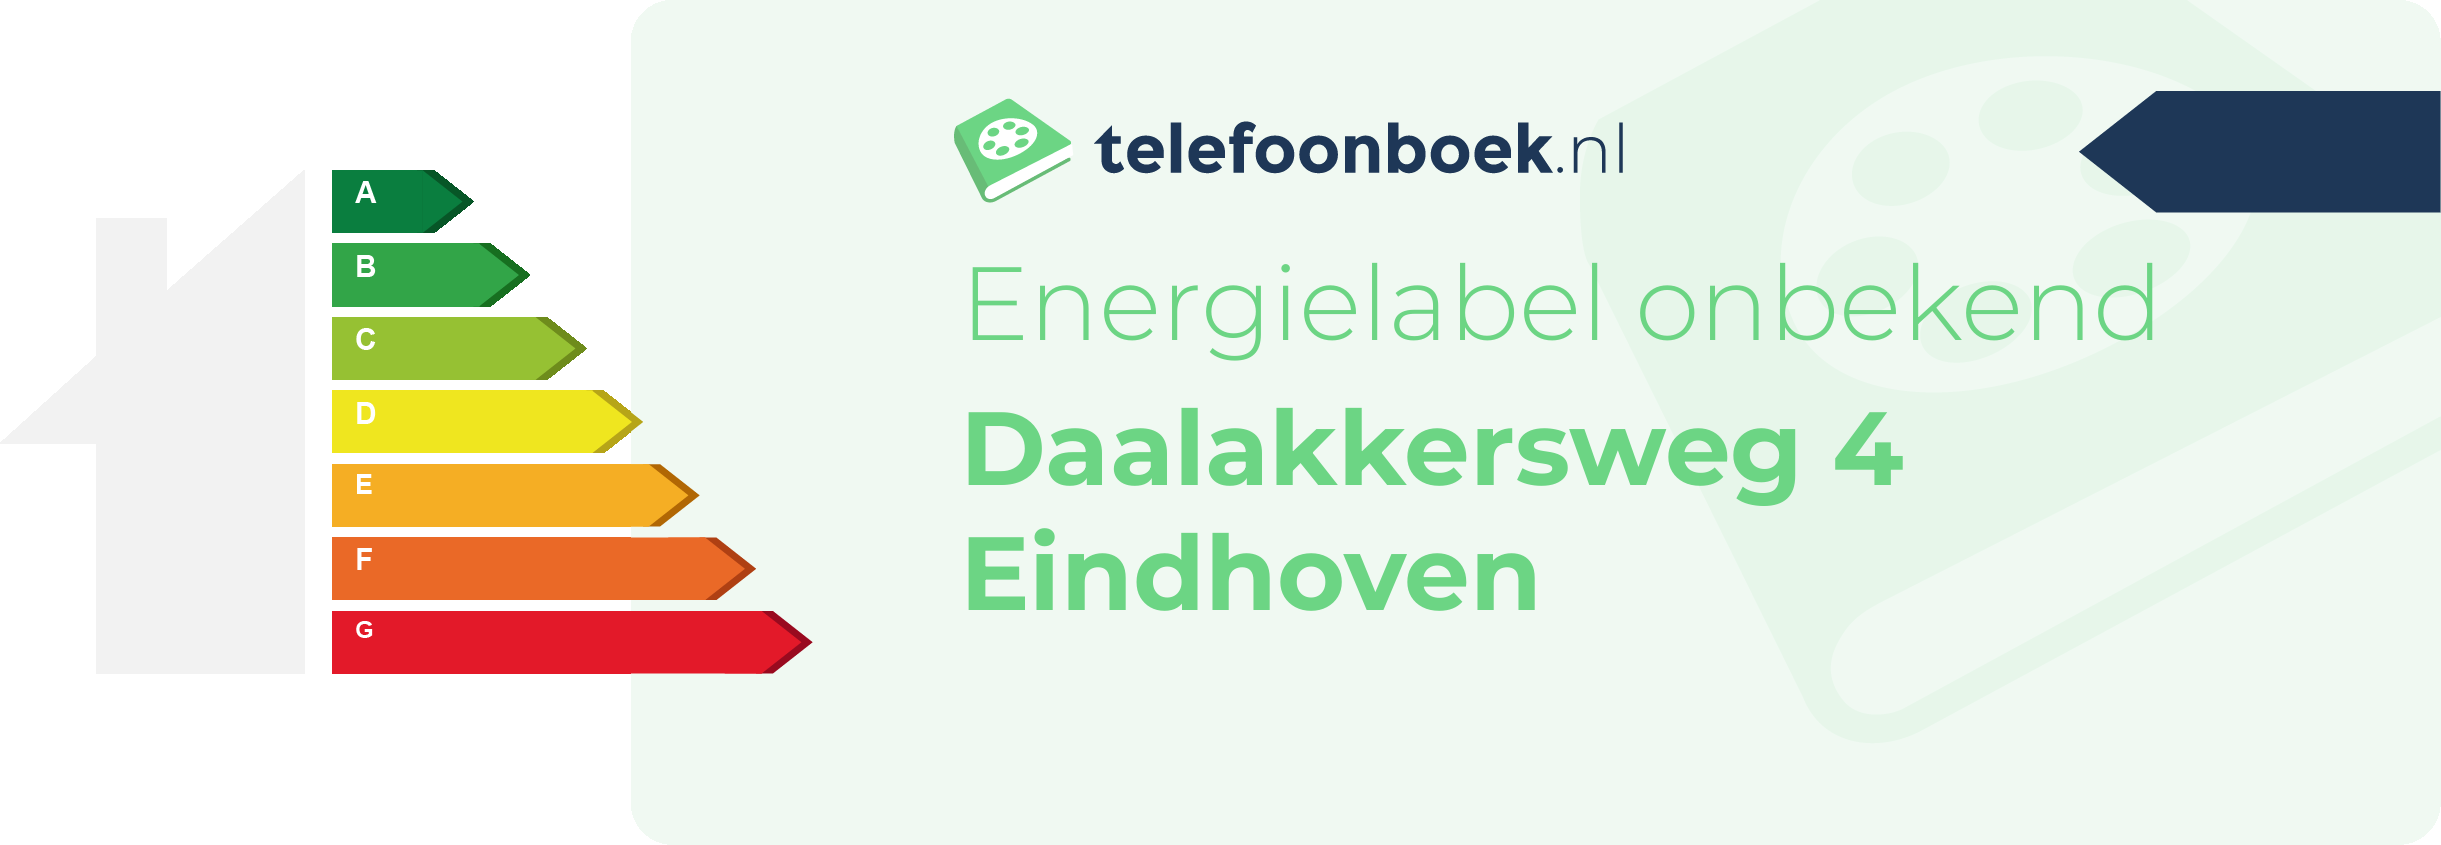 Energielabel Daalakkersweg 4 Eindhoven